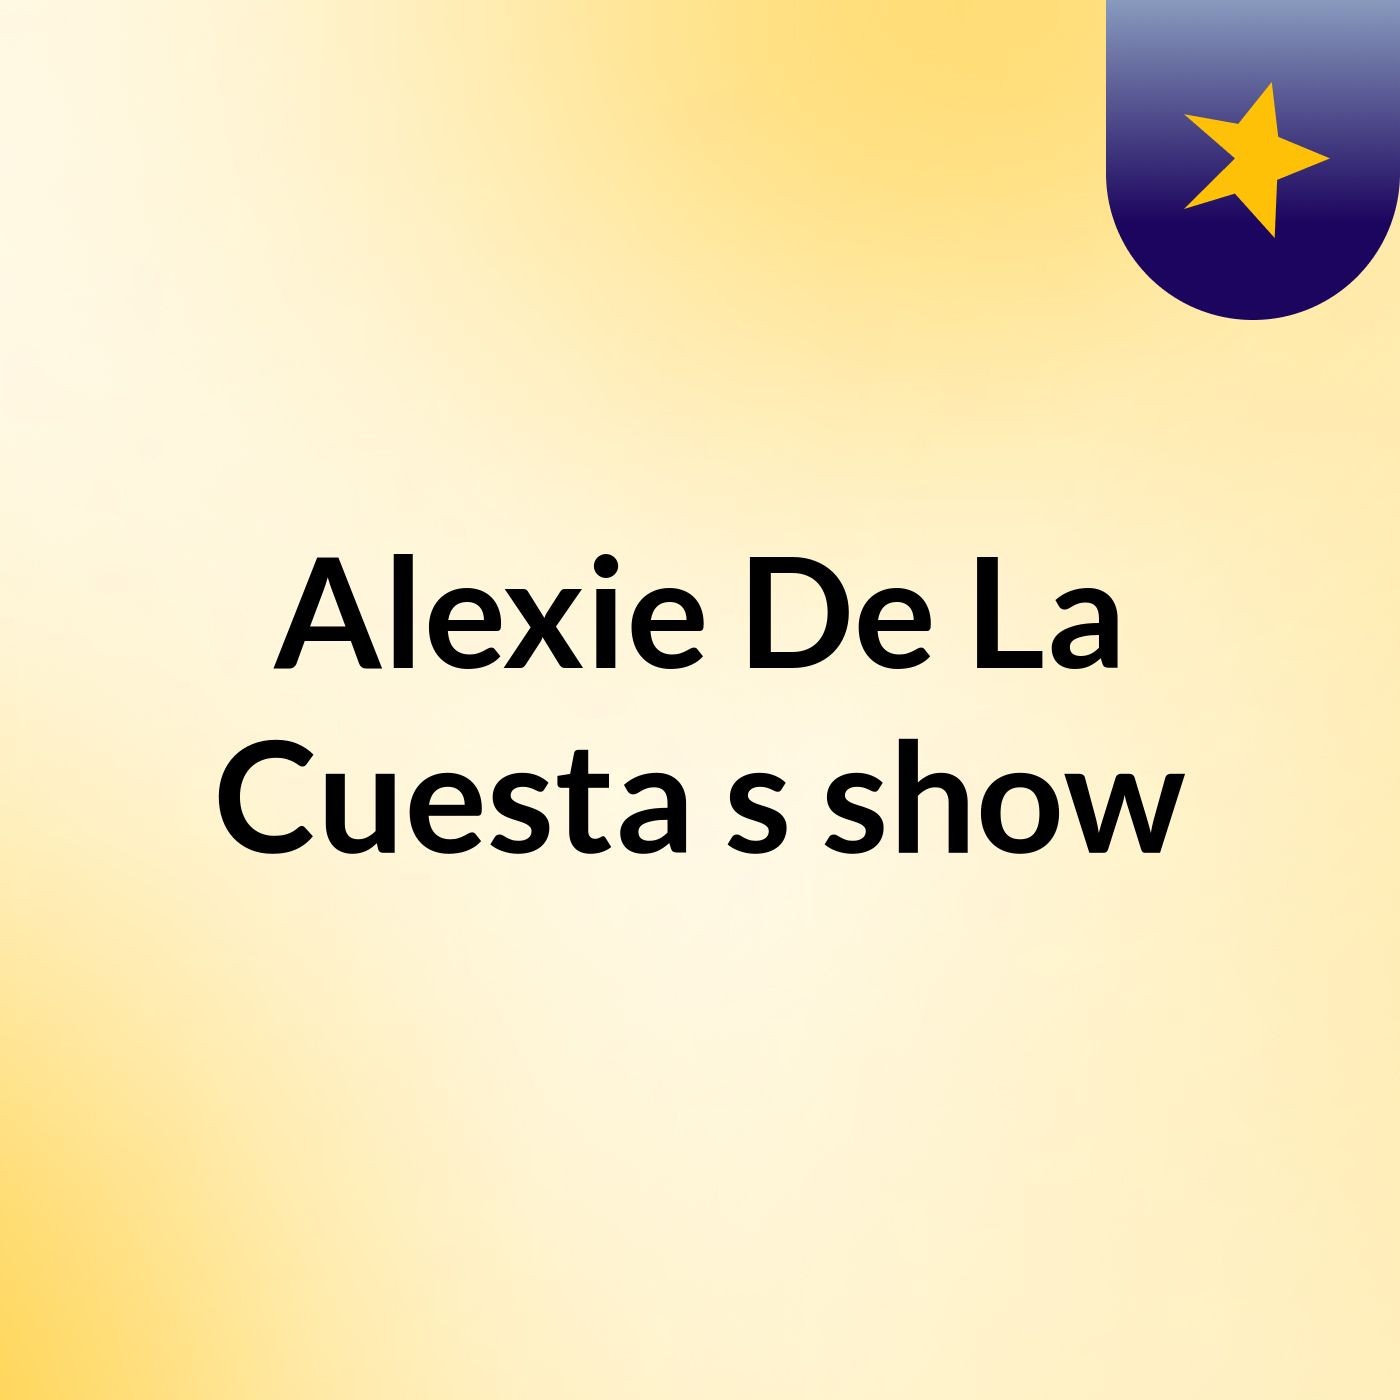 Alexie De La Cuesta's show